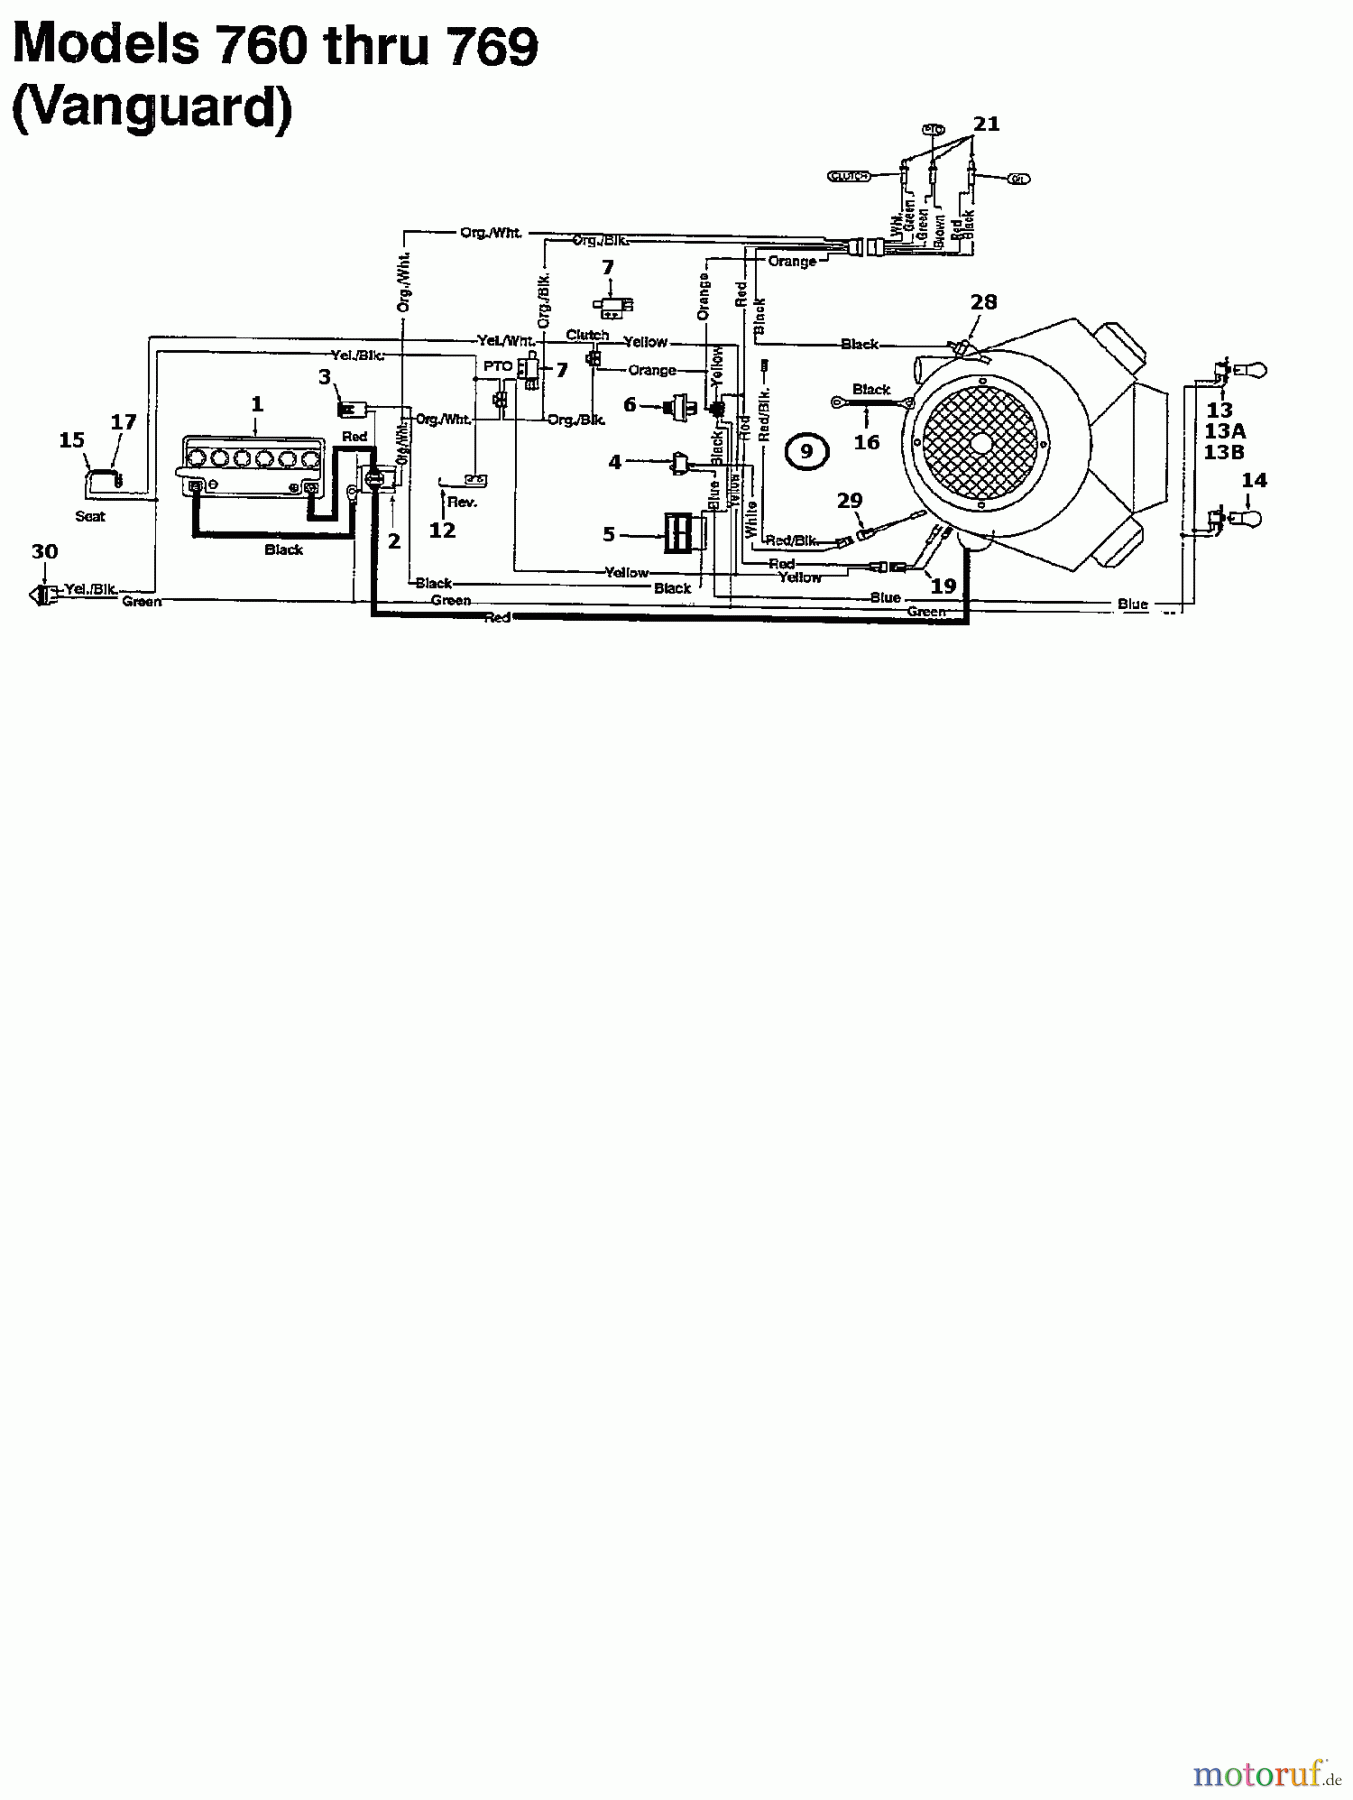  MTD Rasentraktoren 125/40 134-765N678  (1994) Schaltplan Vanguard